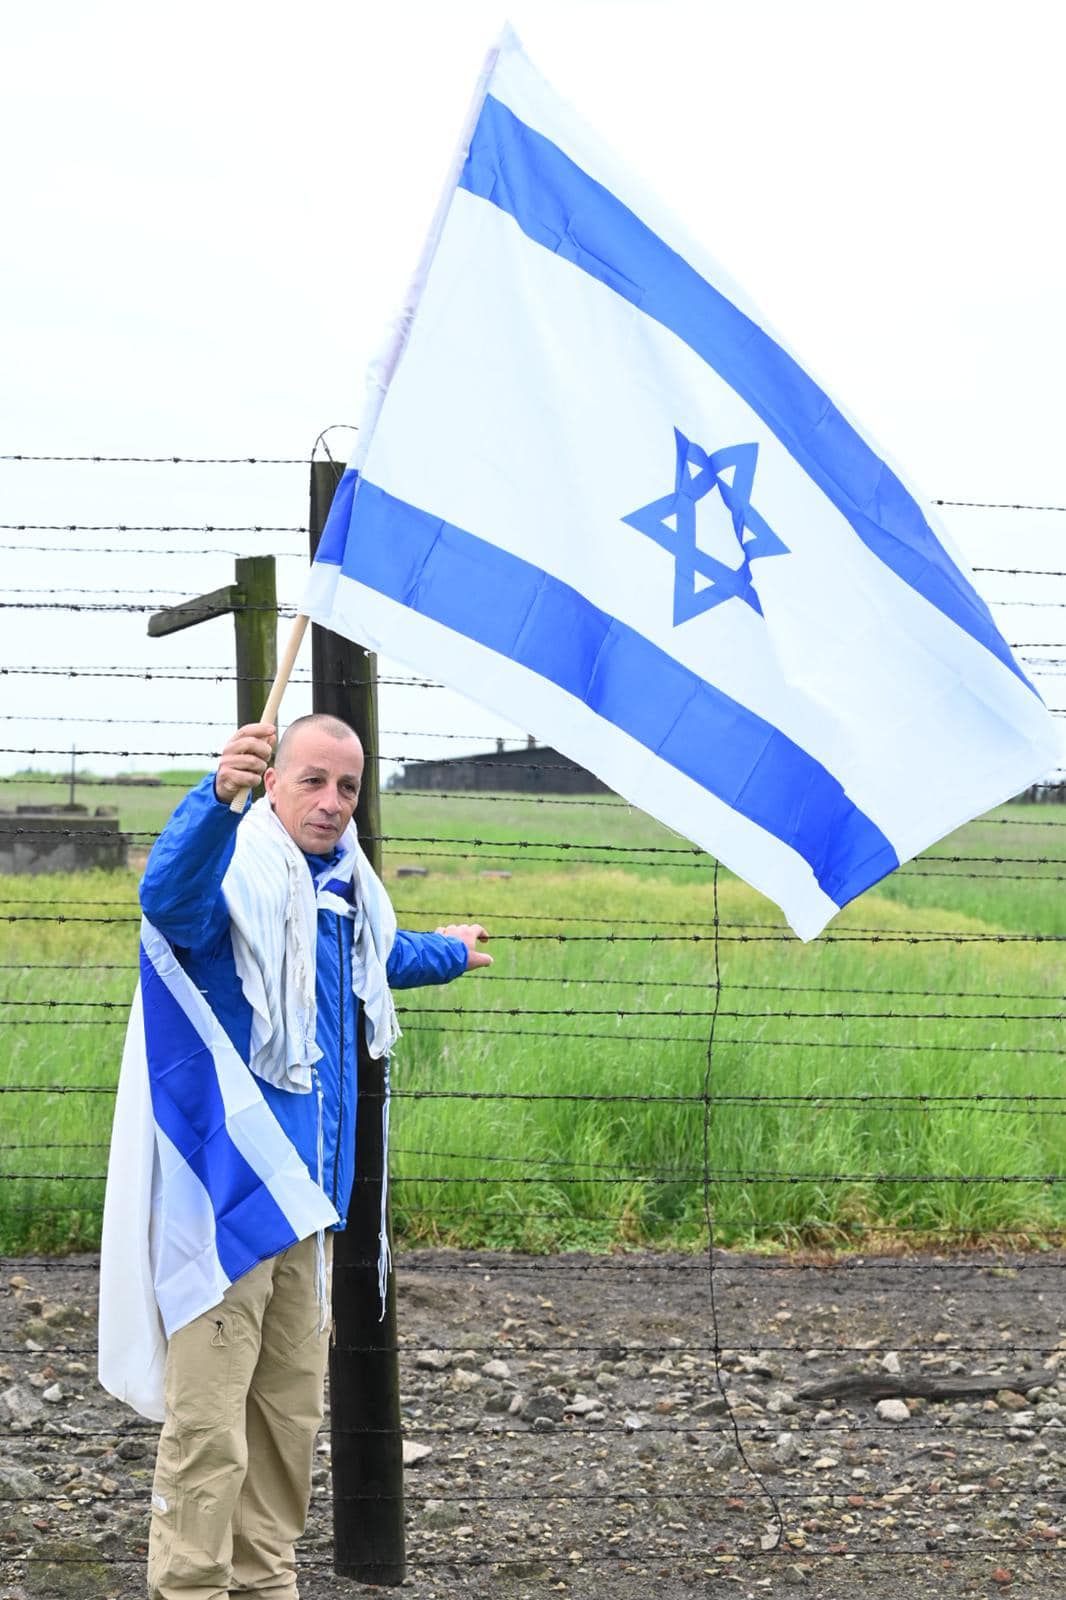 אופיר אלקלעי אוחז בגדר התיל במחנה אושוויץ עטוף בדגל ועם דגל ישראל מונף